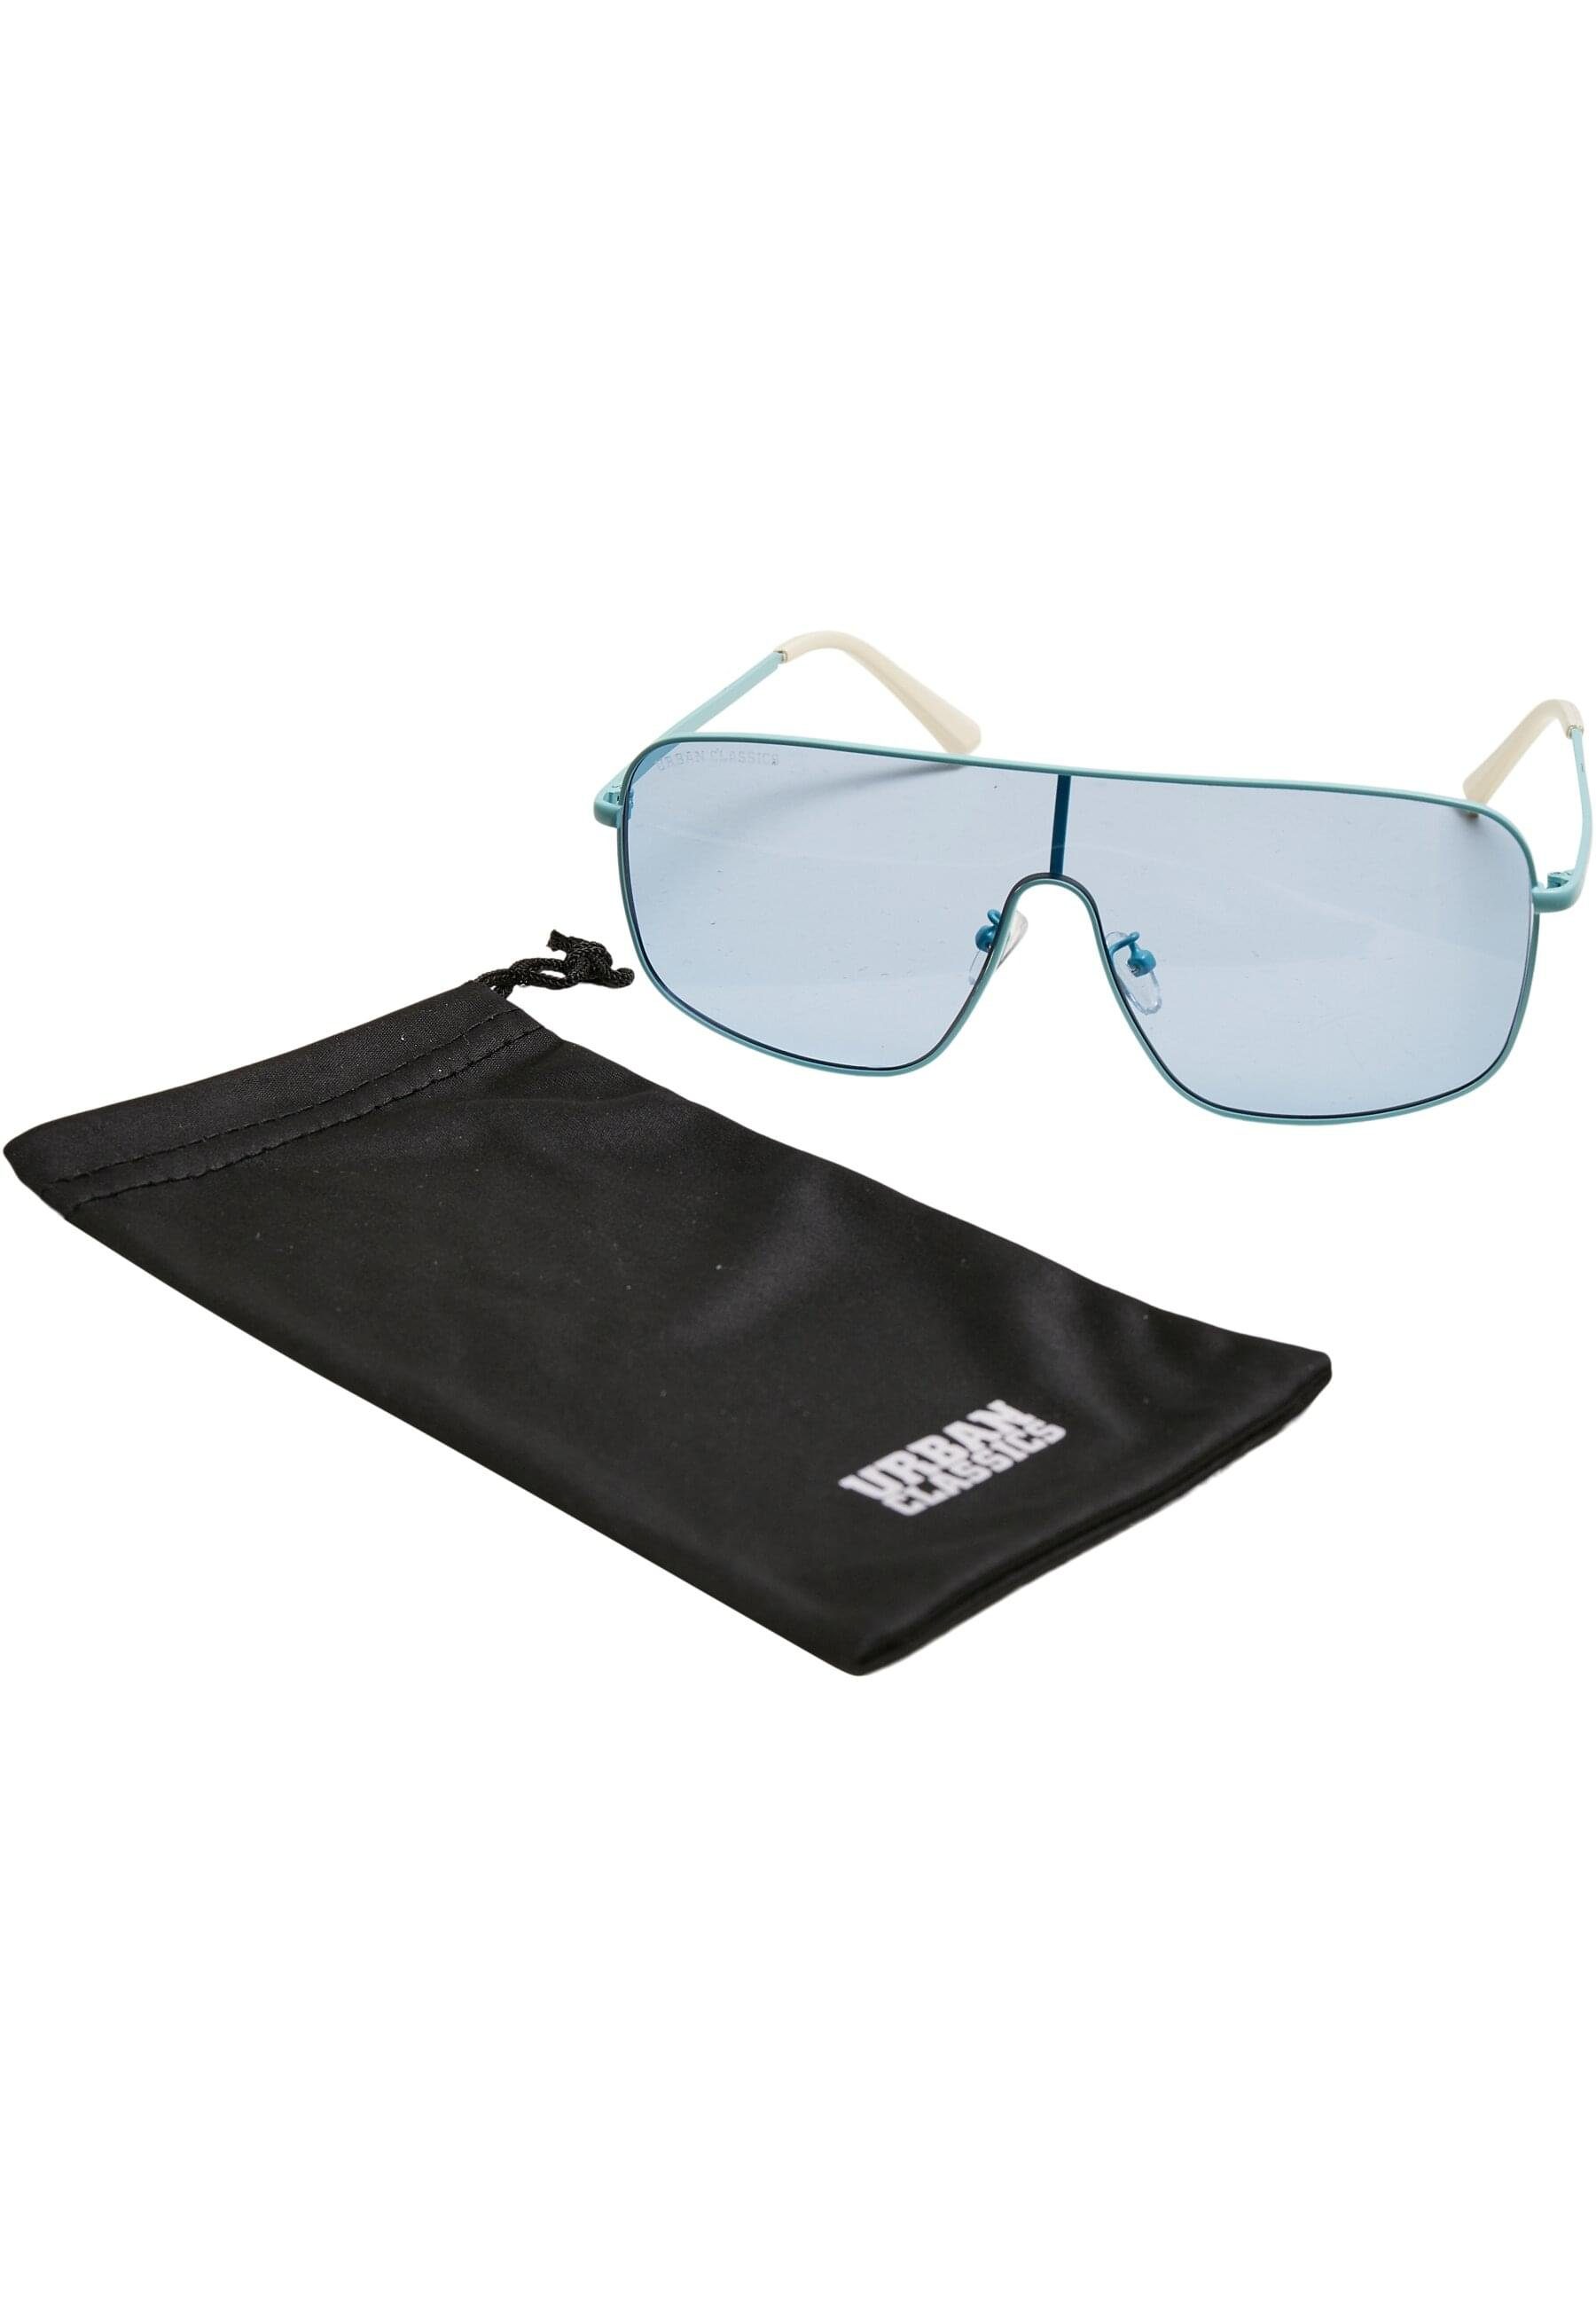 Unisex lightblue Sunglasses URBAN Sonnenbrille California CLASSICS